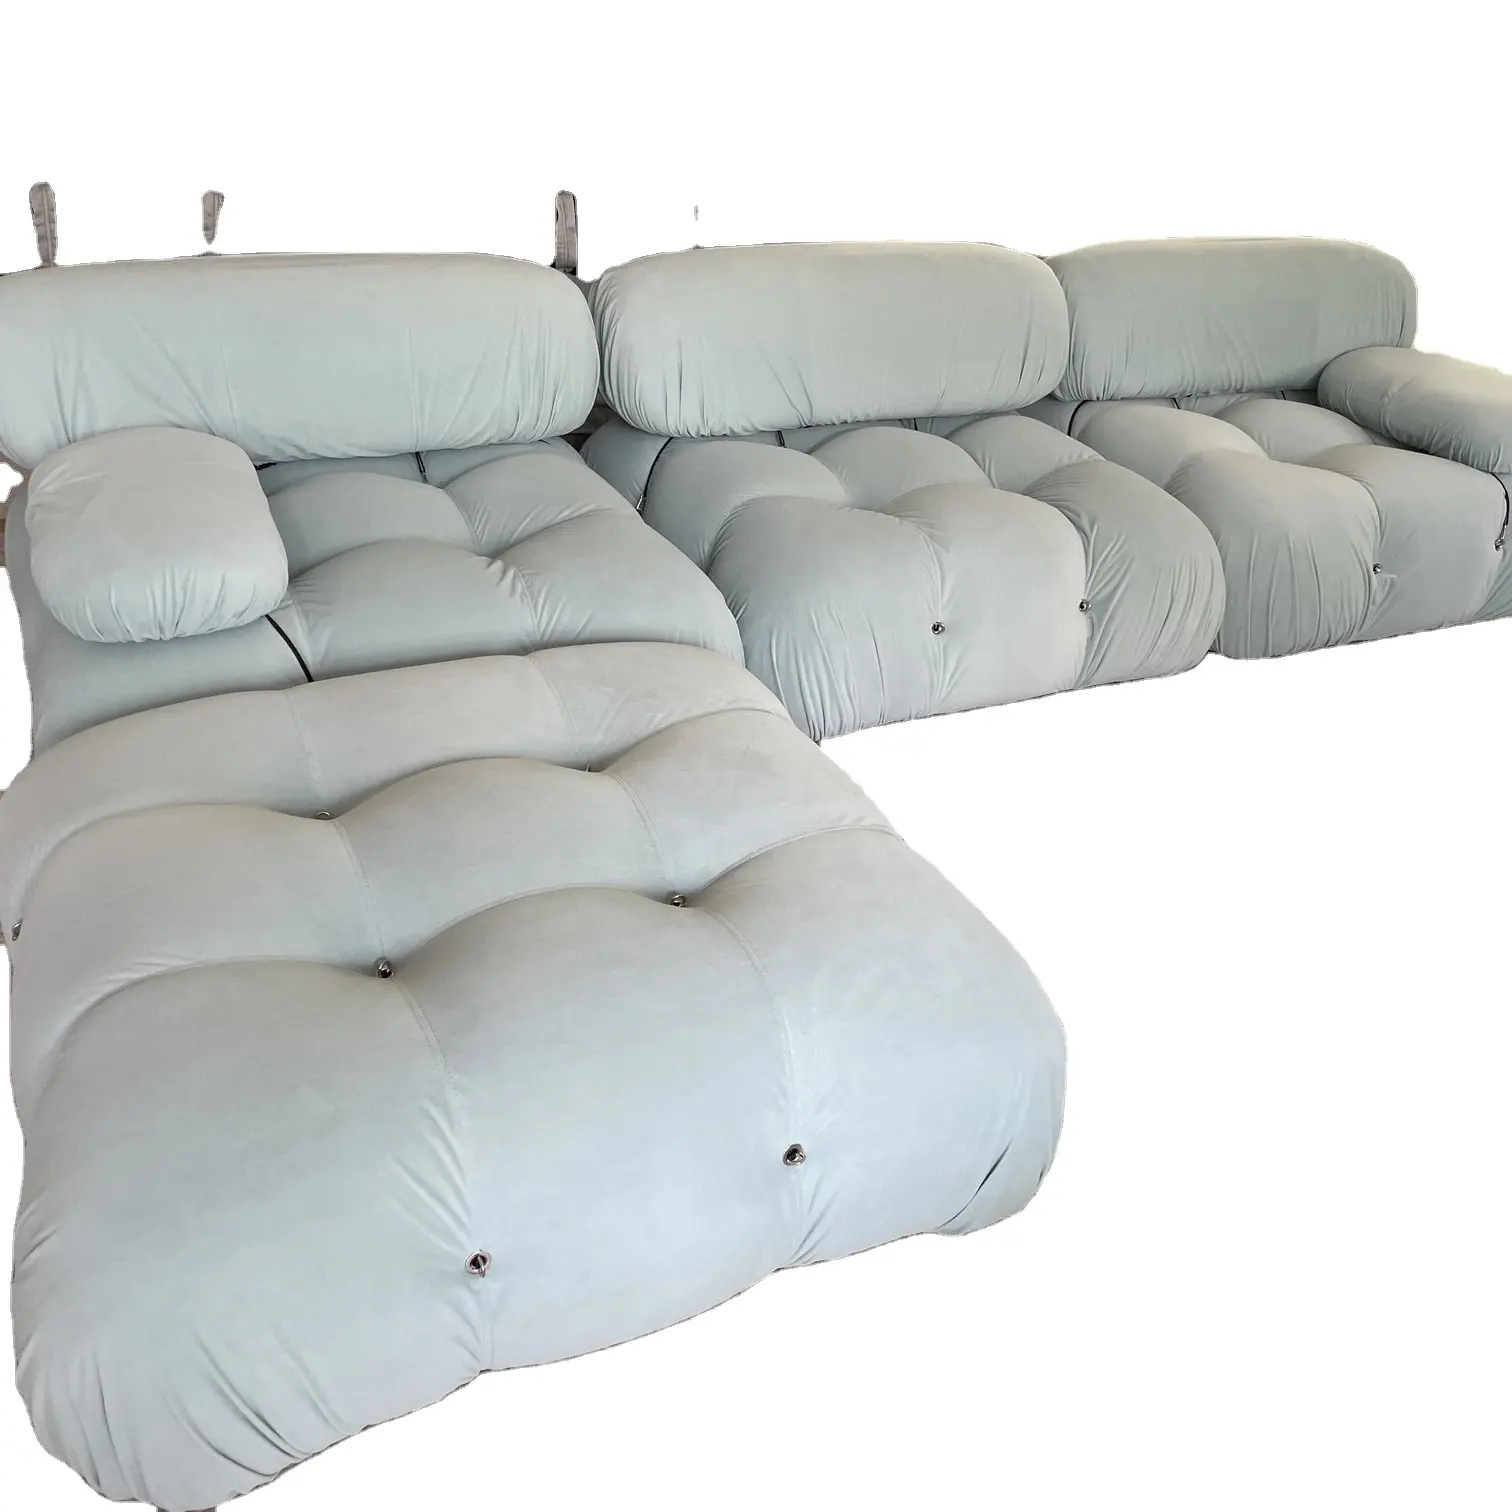 Modernes Wohnzimmer Mario Sofa Freizeit Modulares Sofa Komfortable, langlebige Boucle Couch für Wohn möbel Set Schnitts ofa